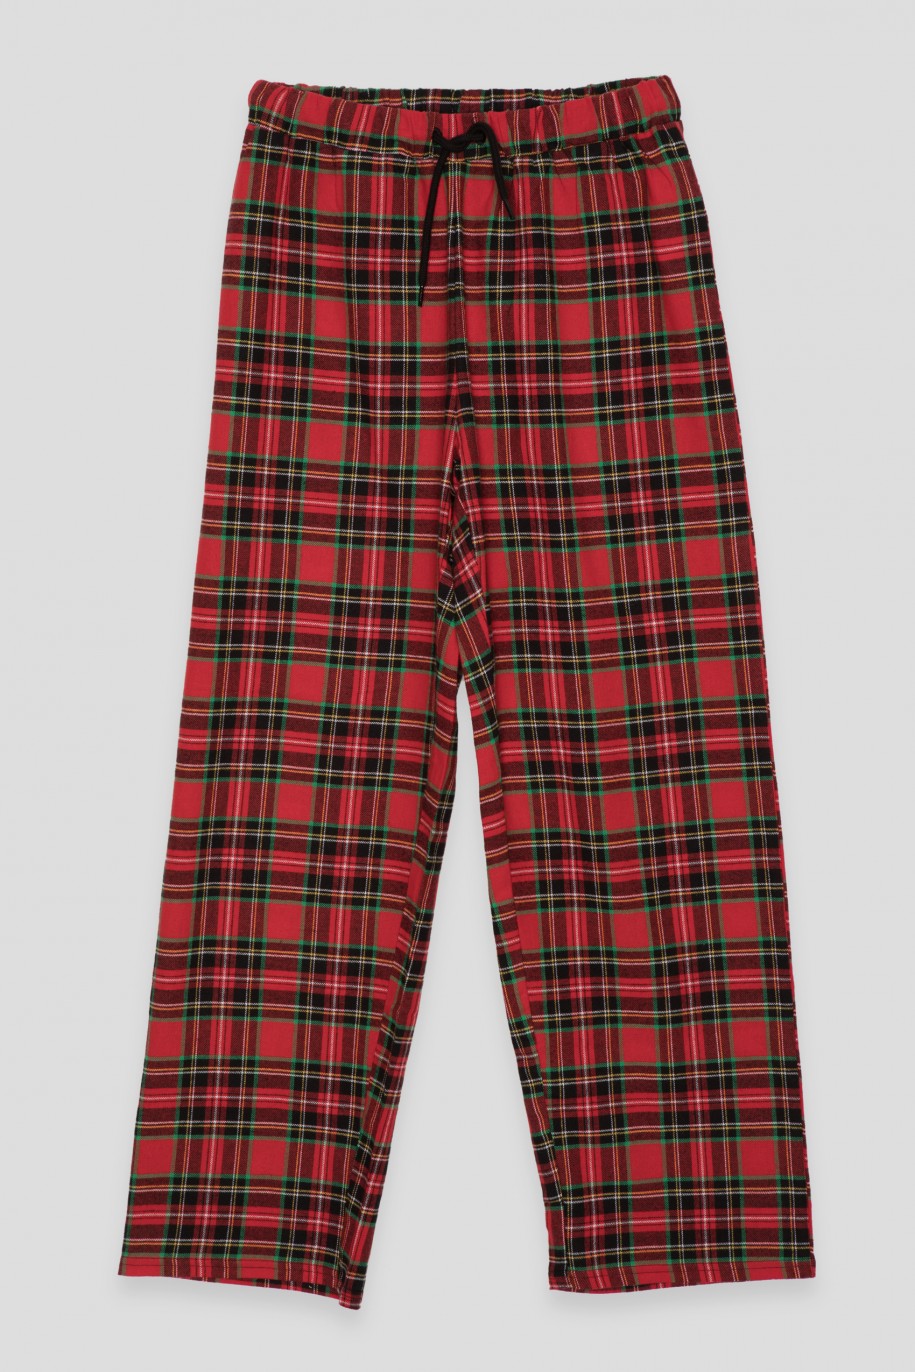 Czarno-czerwona świąteczna piżama dla dziewczyny - 45131